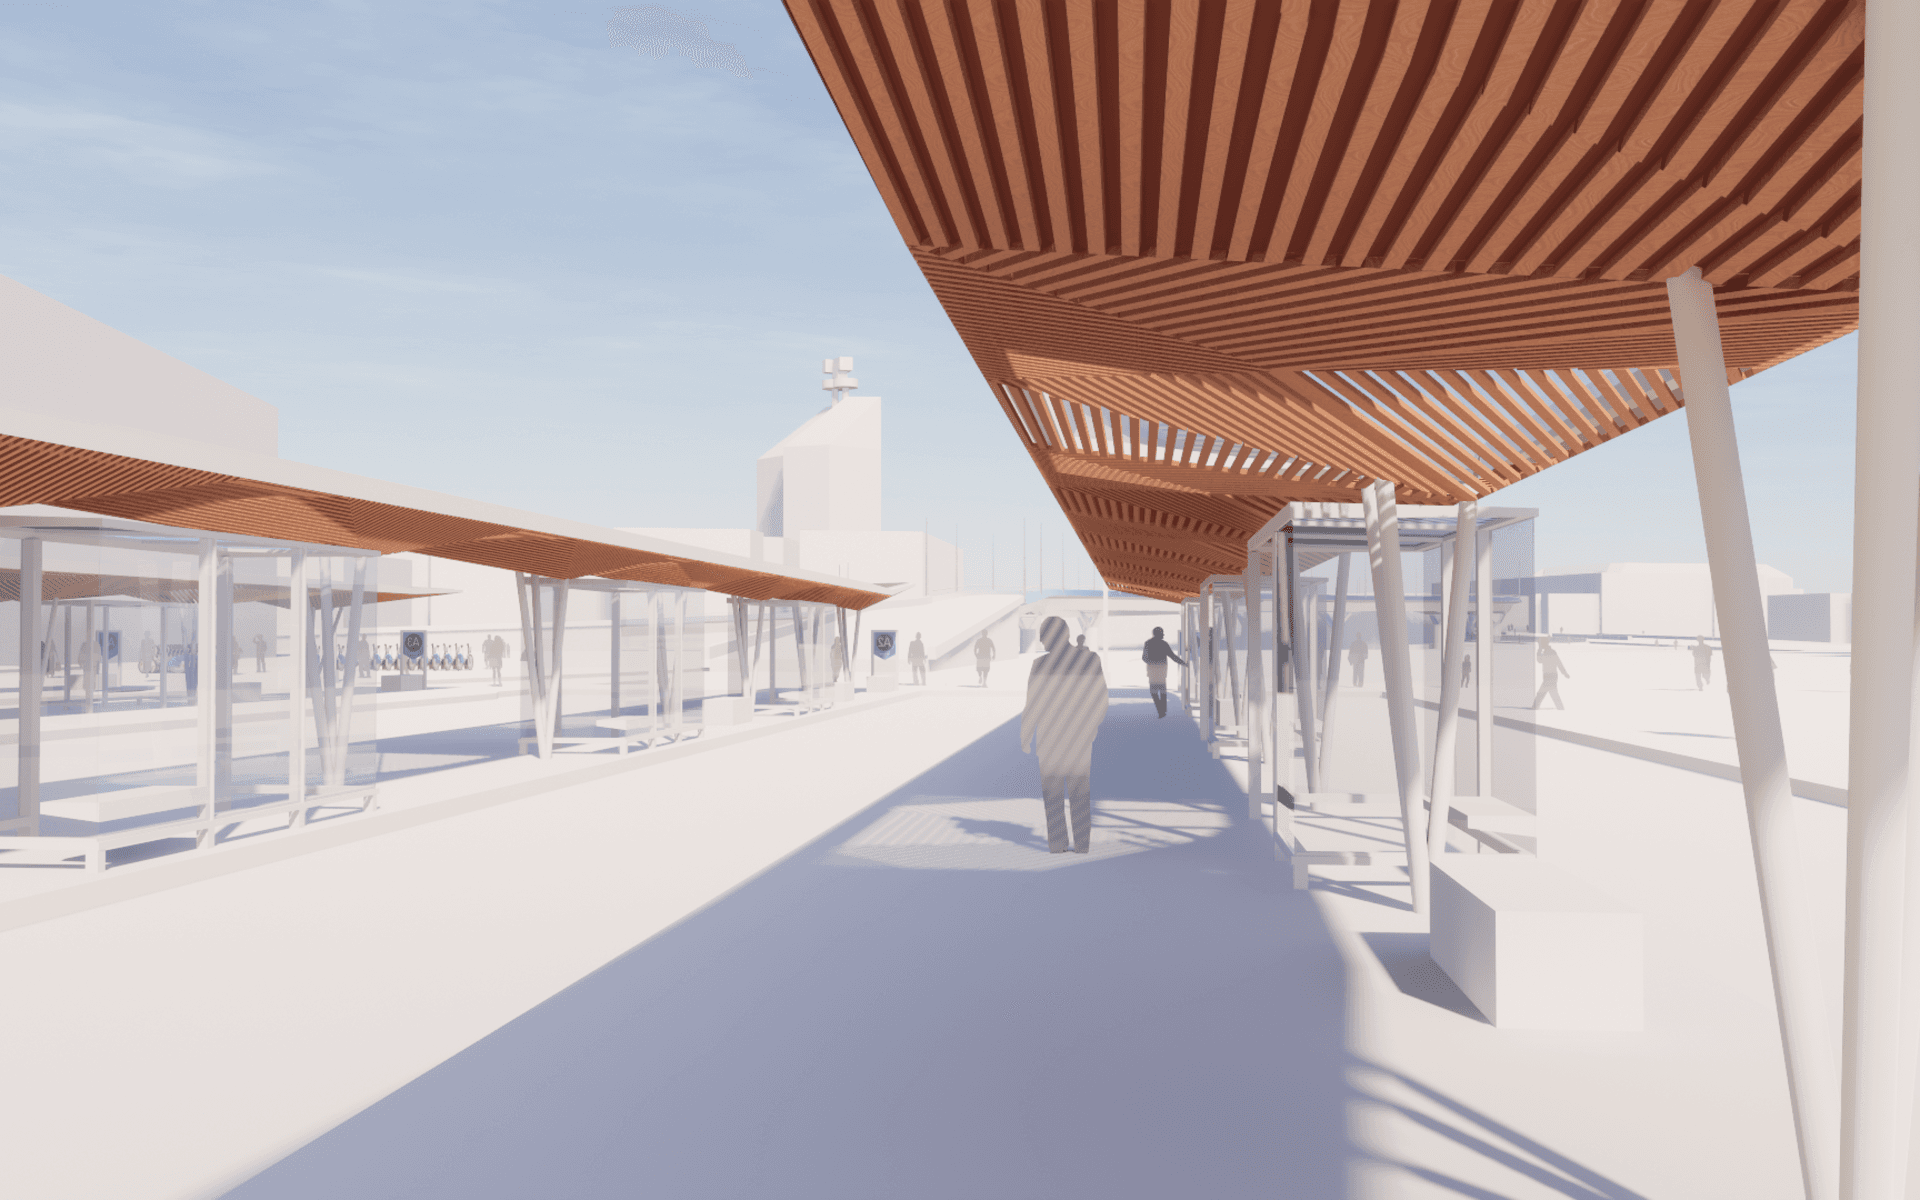 Så här ska hållplats Nordstan se ut efter 2021. En liknande hållplats ska byggas vid Kanaltorget. 